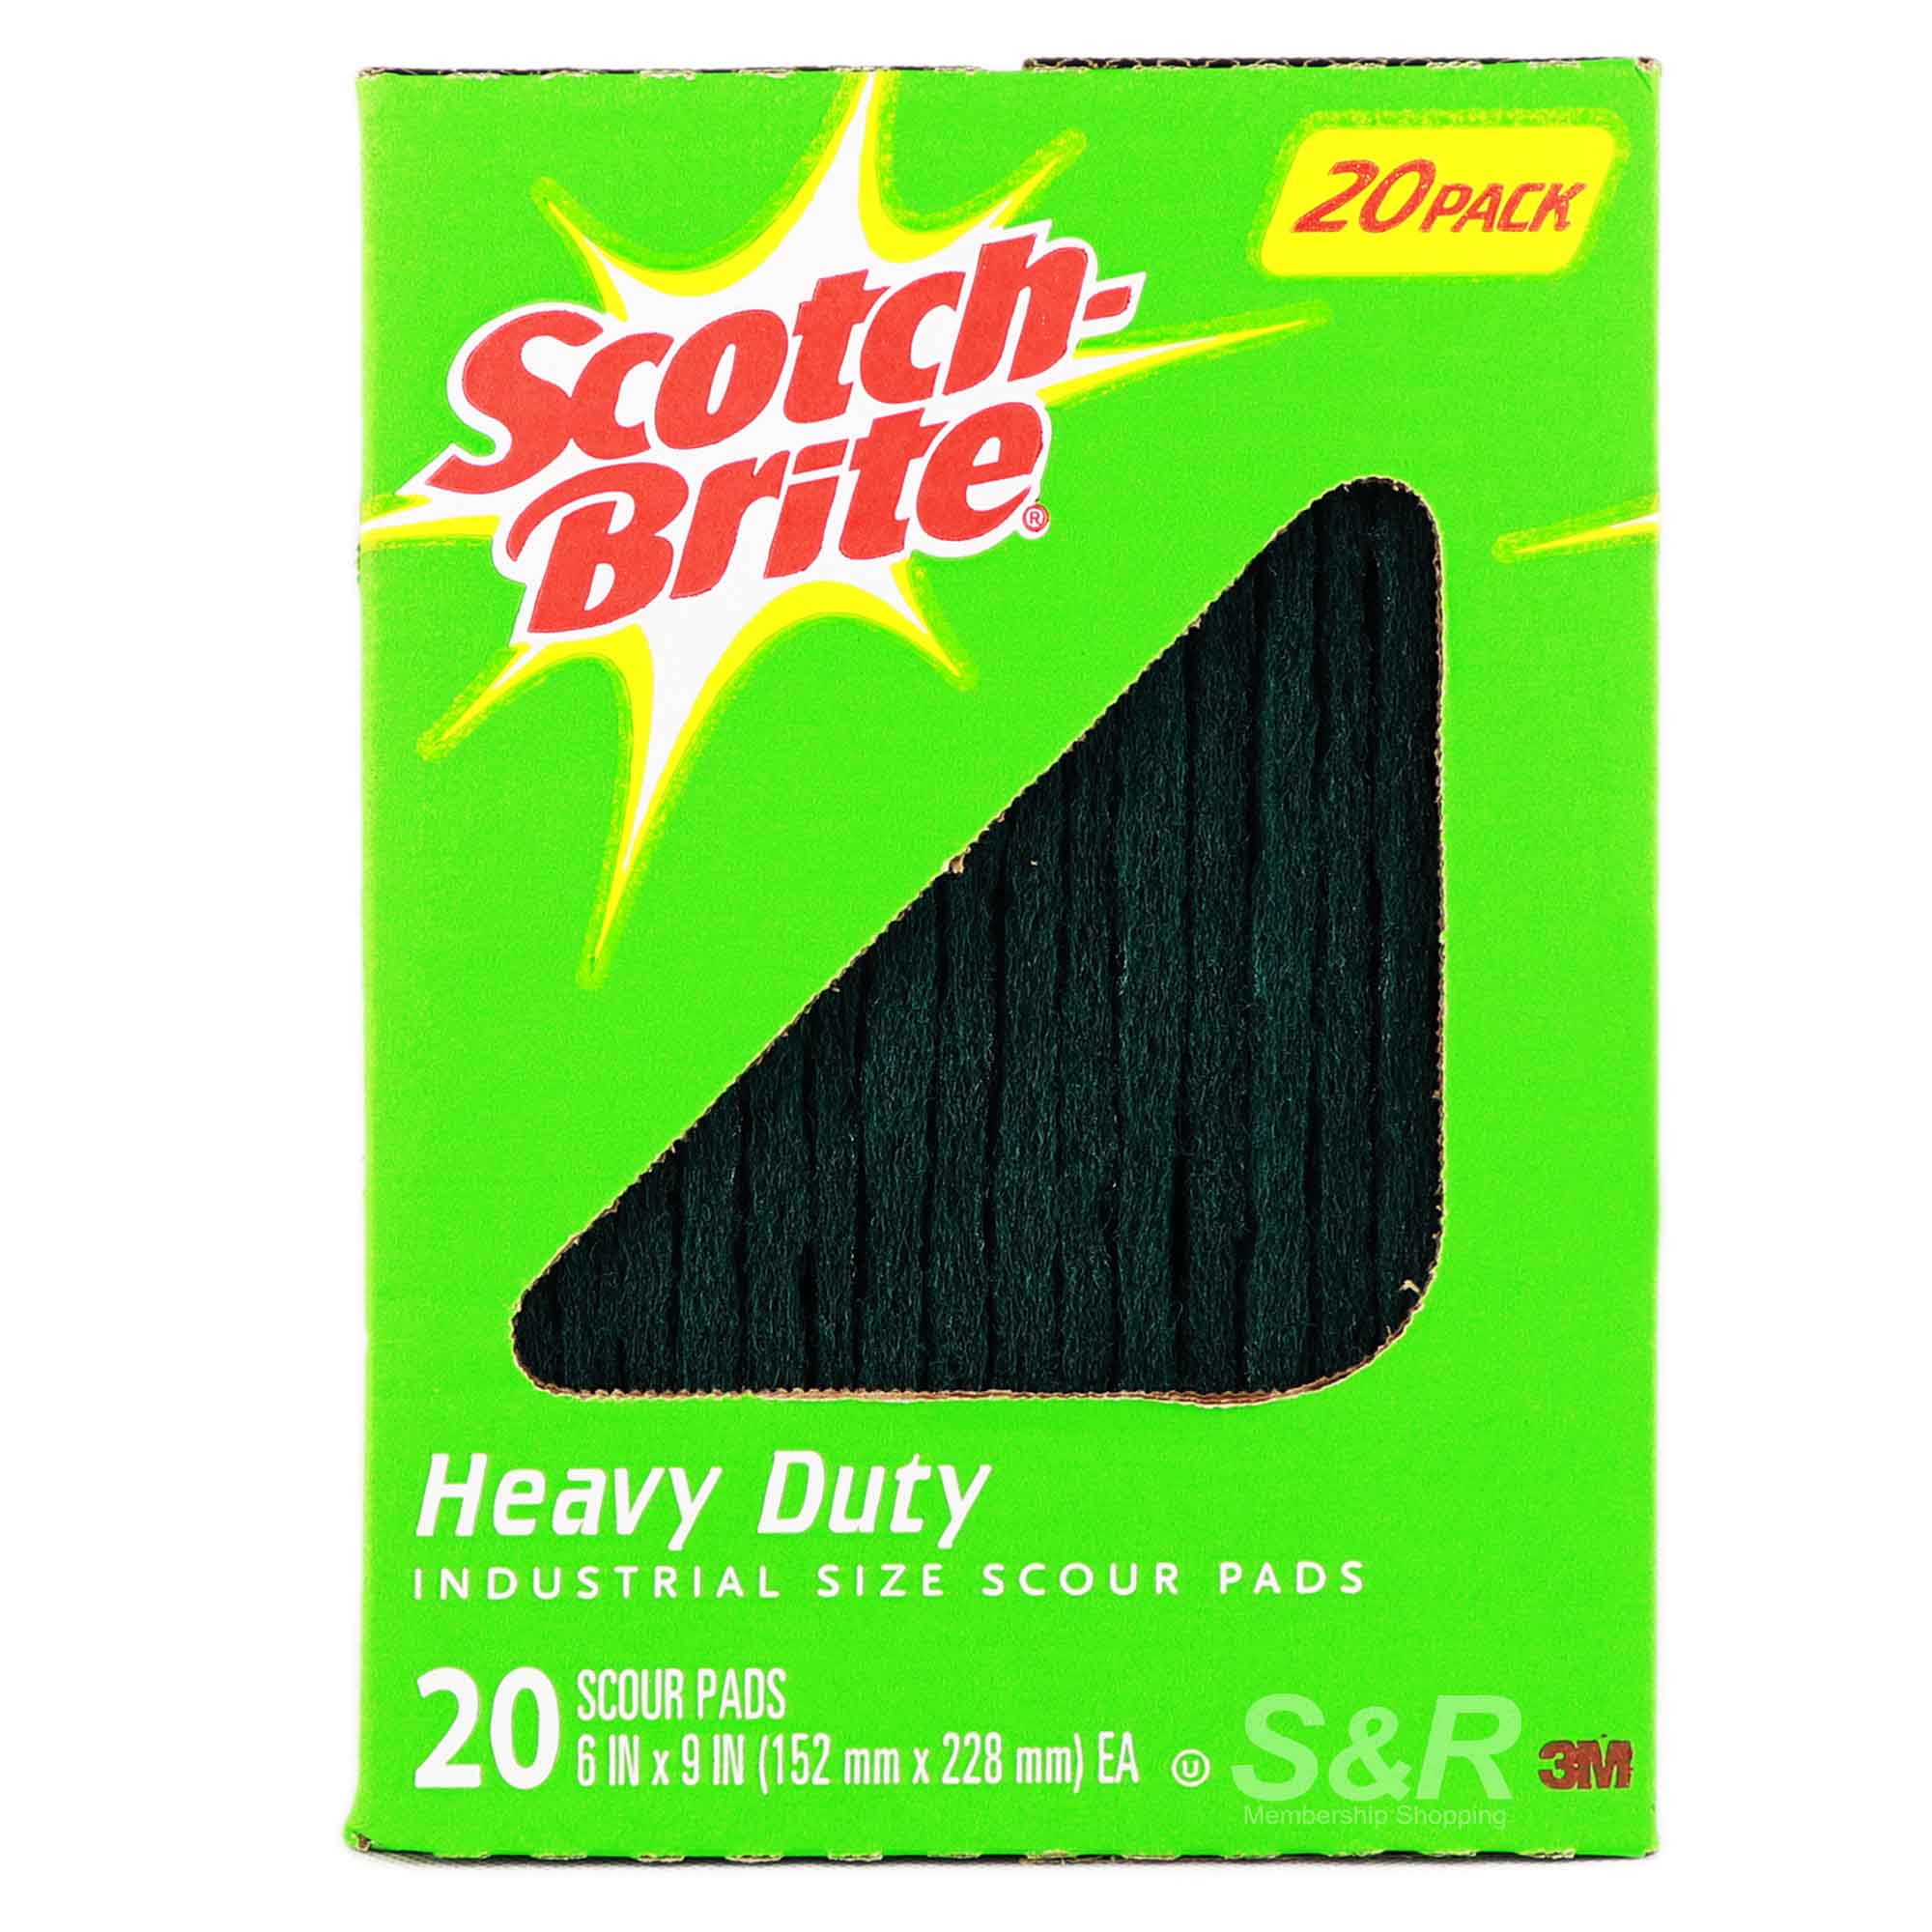 Scotch-Brite Heavy Duty Industrial Size Scour Pads 20pcs